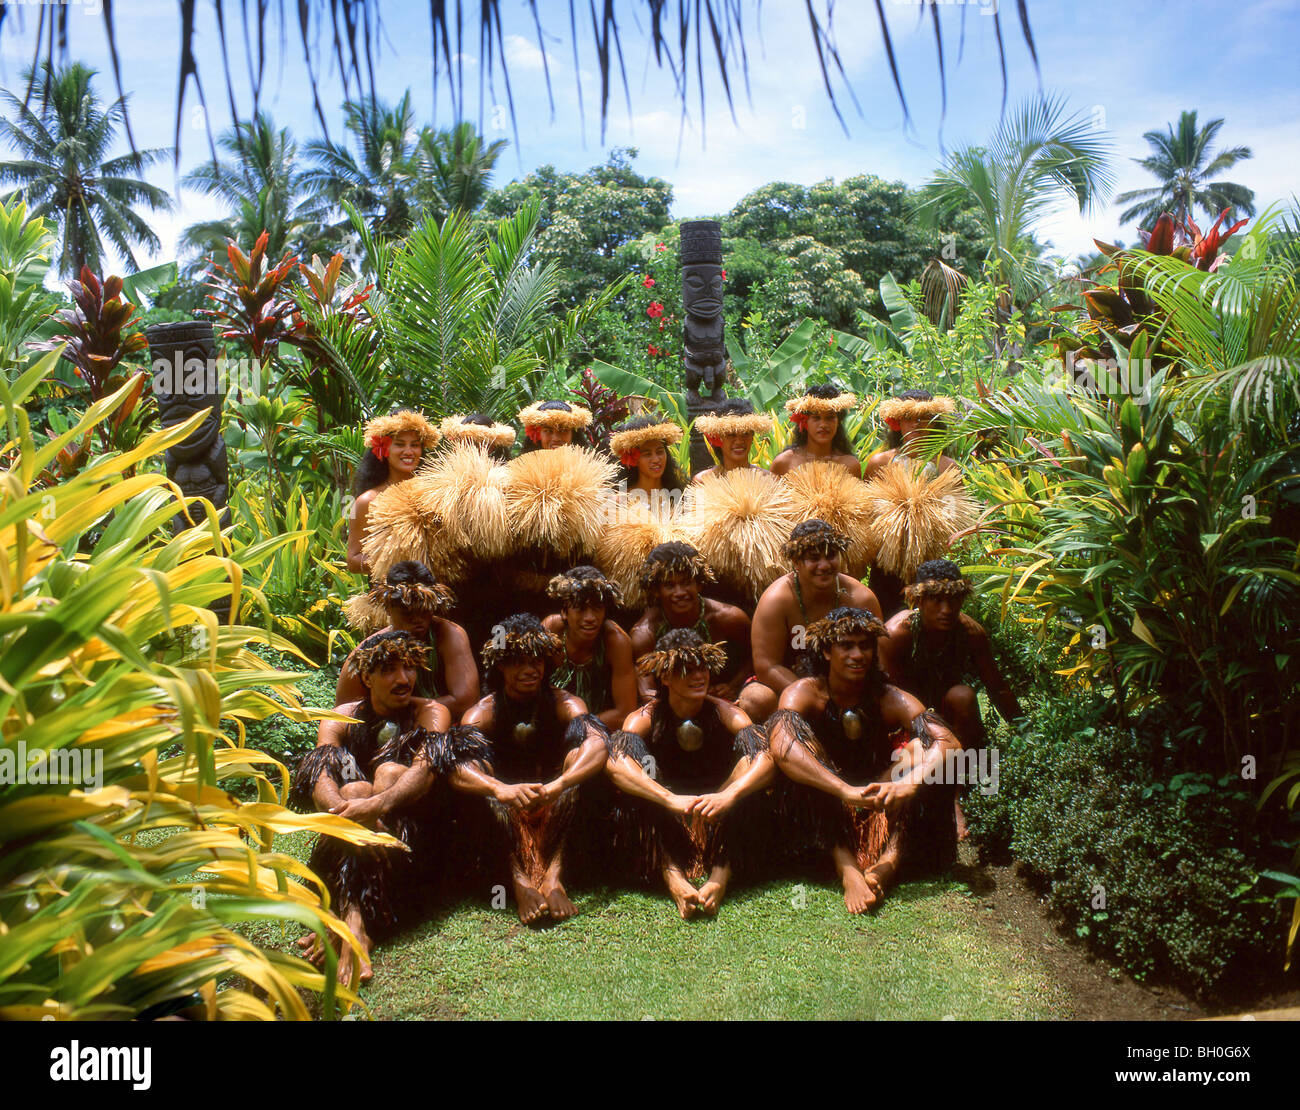 Polynesische Tanzgruppe in Gärten, Rarotonga, Cook-Inseln Stockfoto